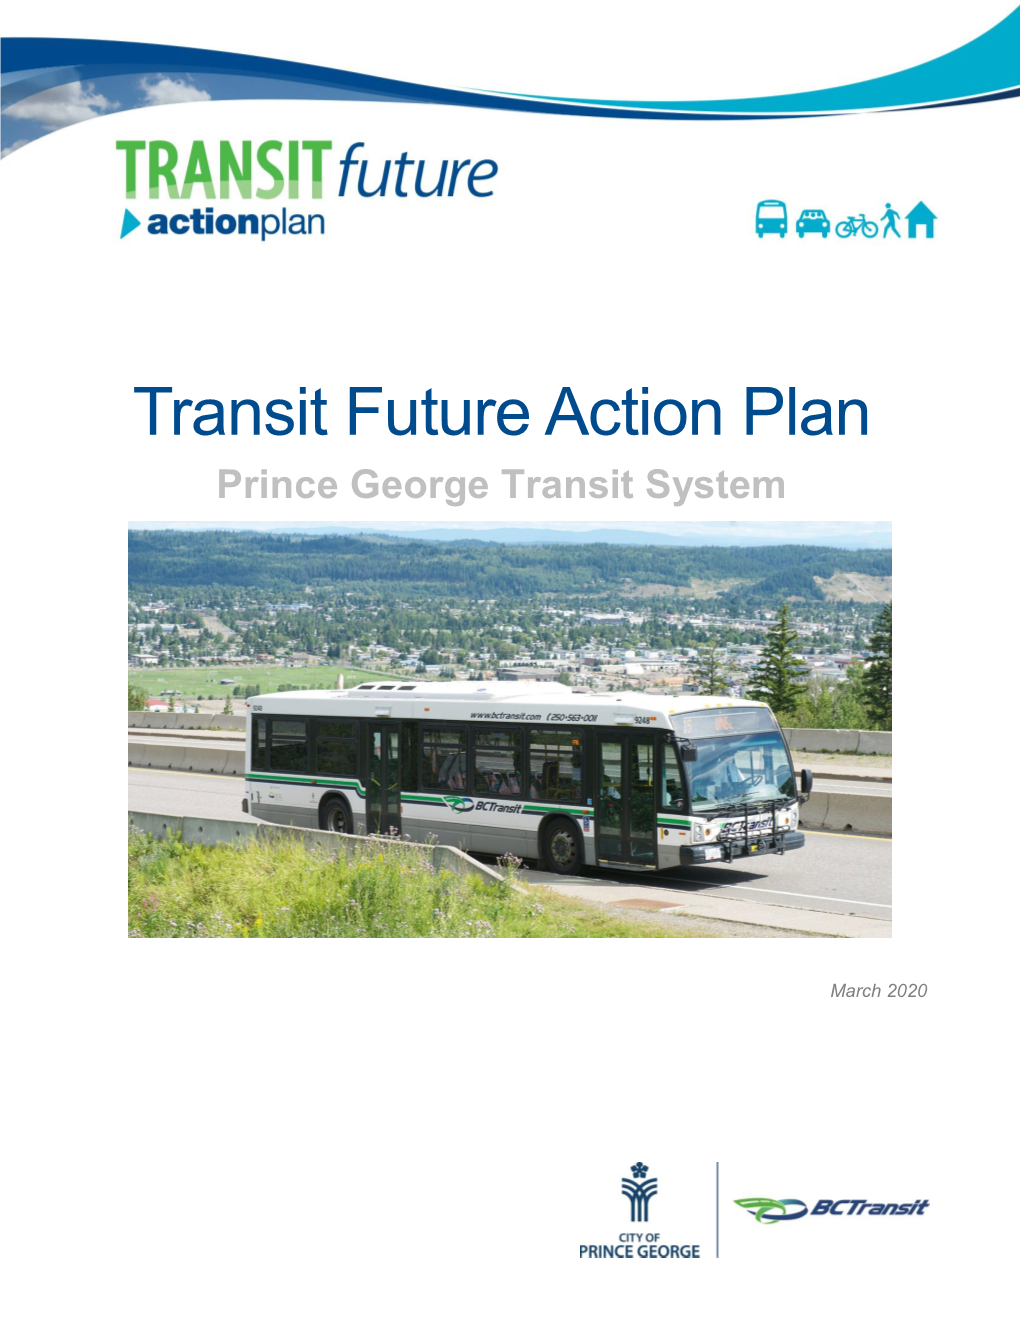 Prince George Full Transit Future Action Plan